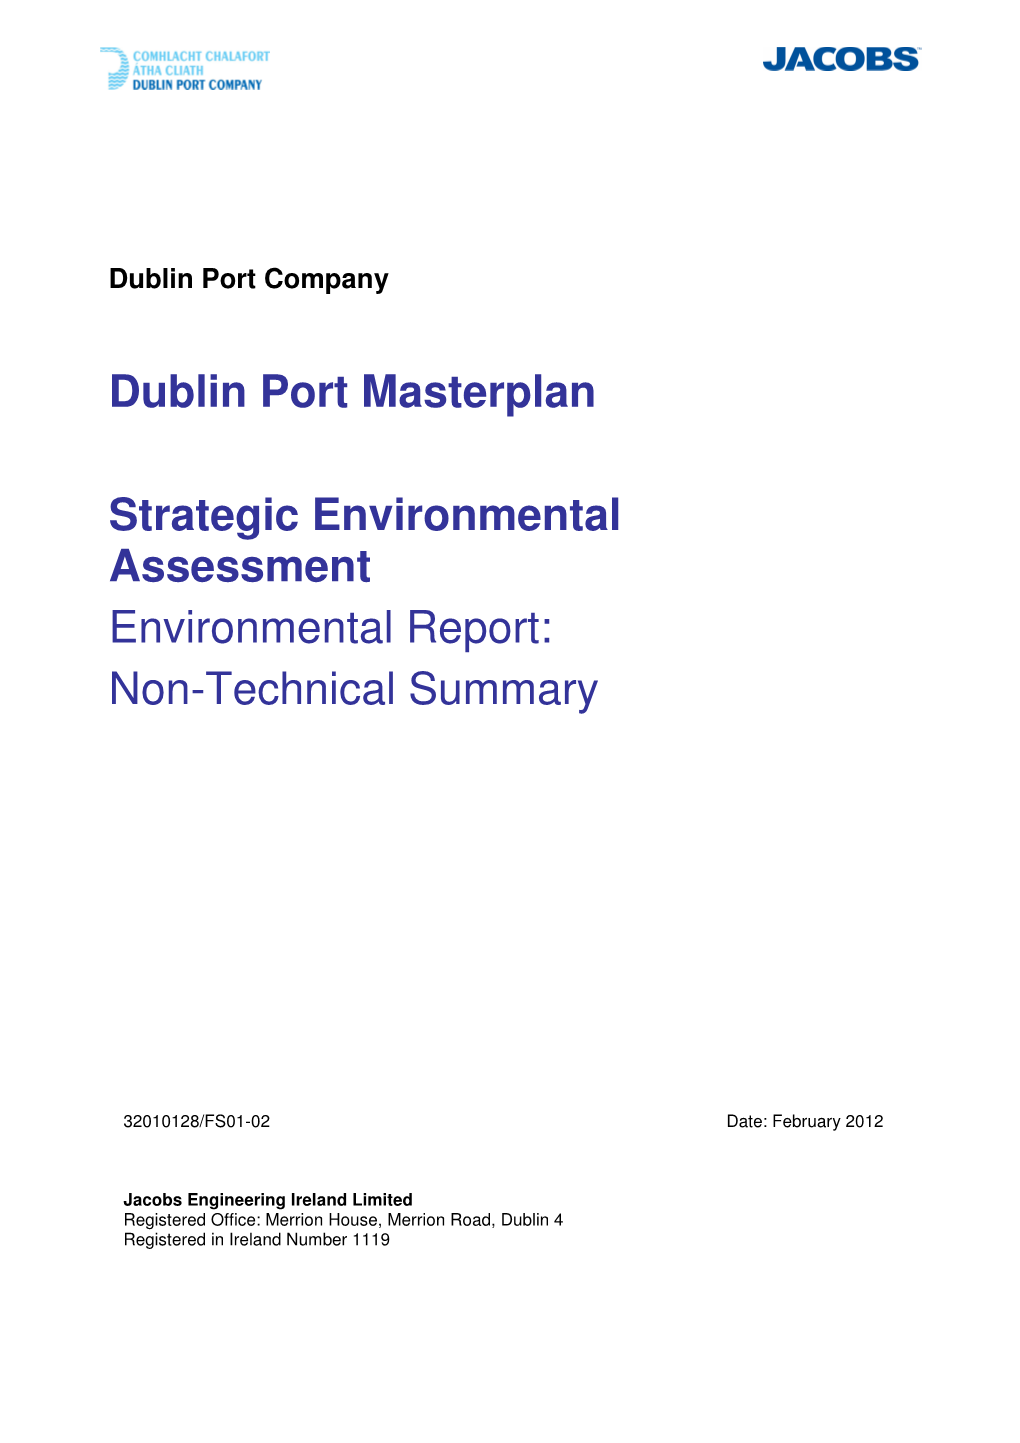 Dublin Port Masterplan Strategic Environmental Assessment